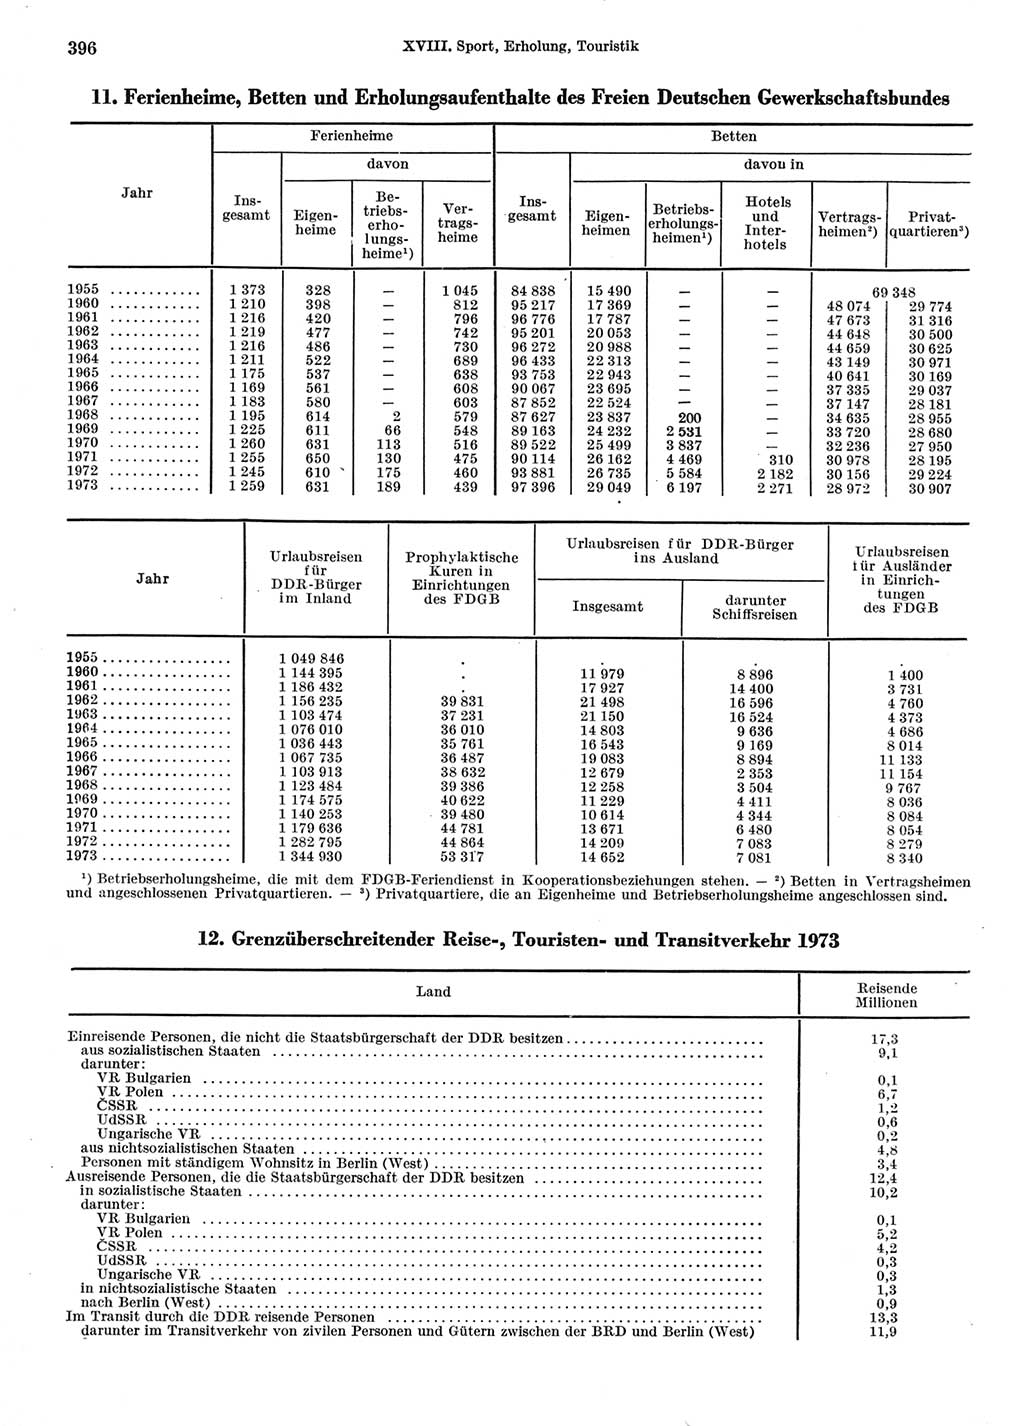 Statistisches Jahrbuch der Deutschen Demokratischen Republik (DDR) 1974, Seite 396 (Stat. Jb. DDR 1974, S. 396)